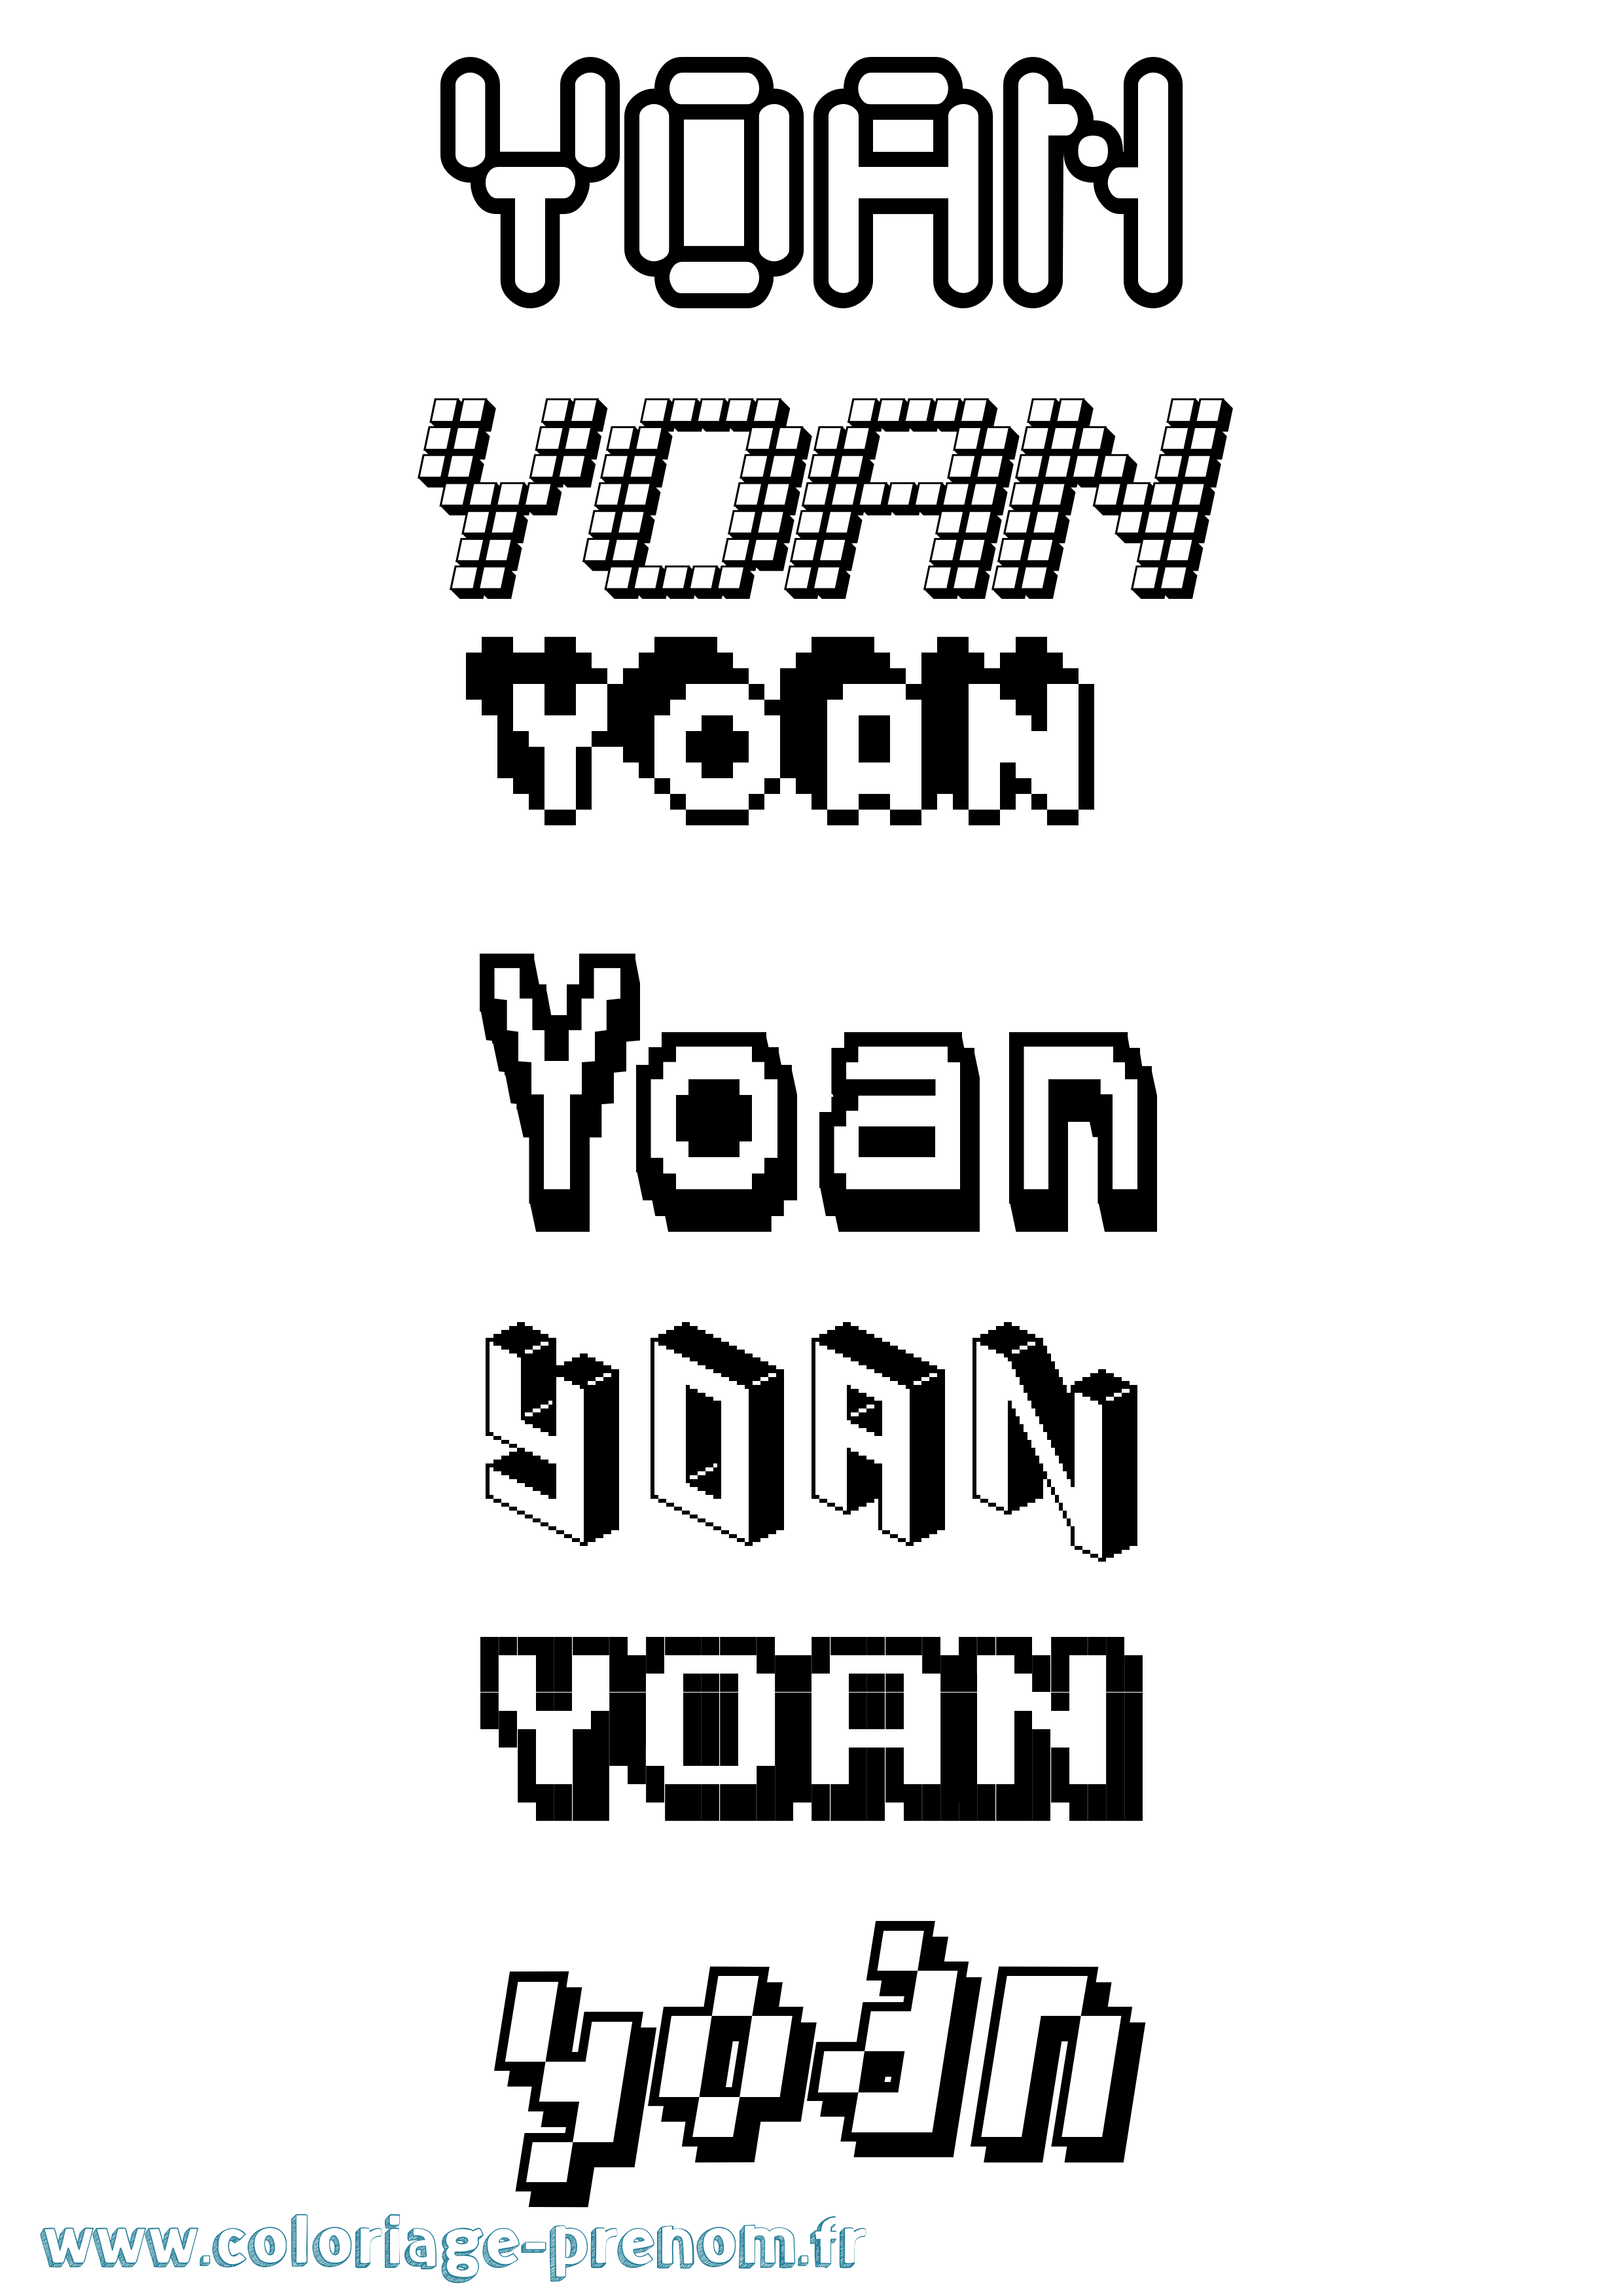 Coloriage prénom Yoan Pixel